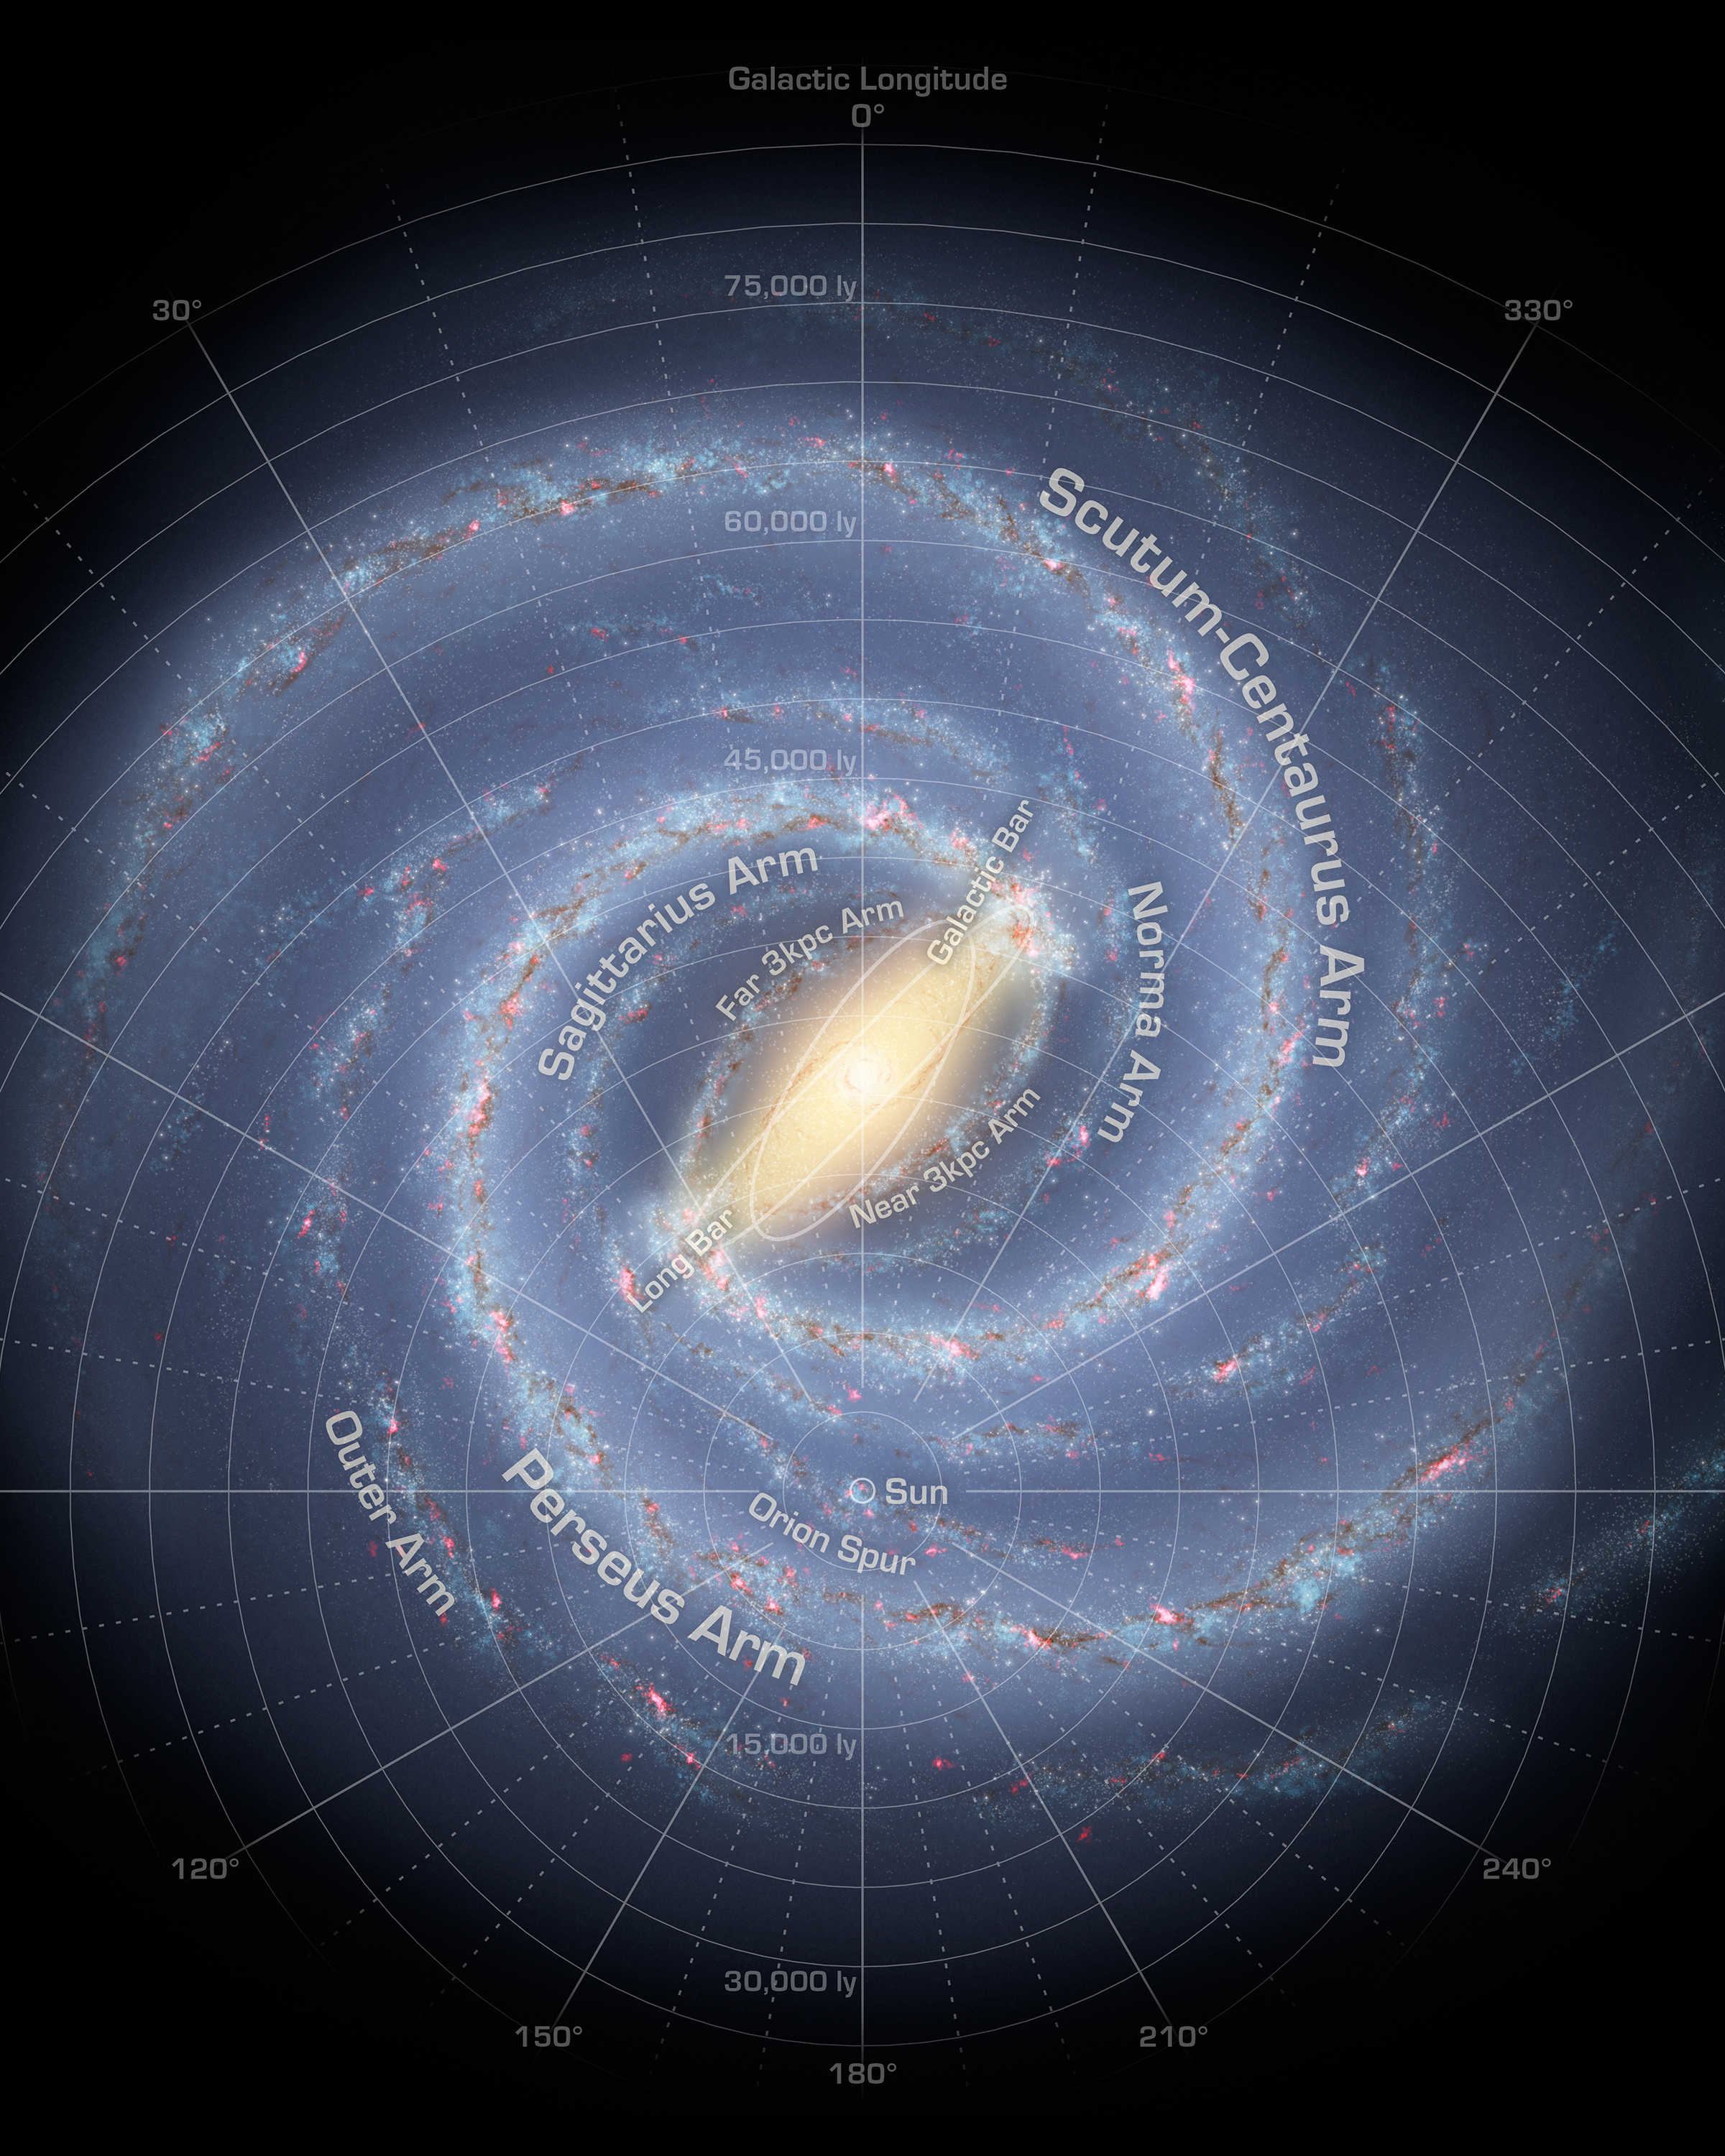 The Milky Way Galaxy | NASA Solar System Exploration